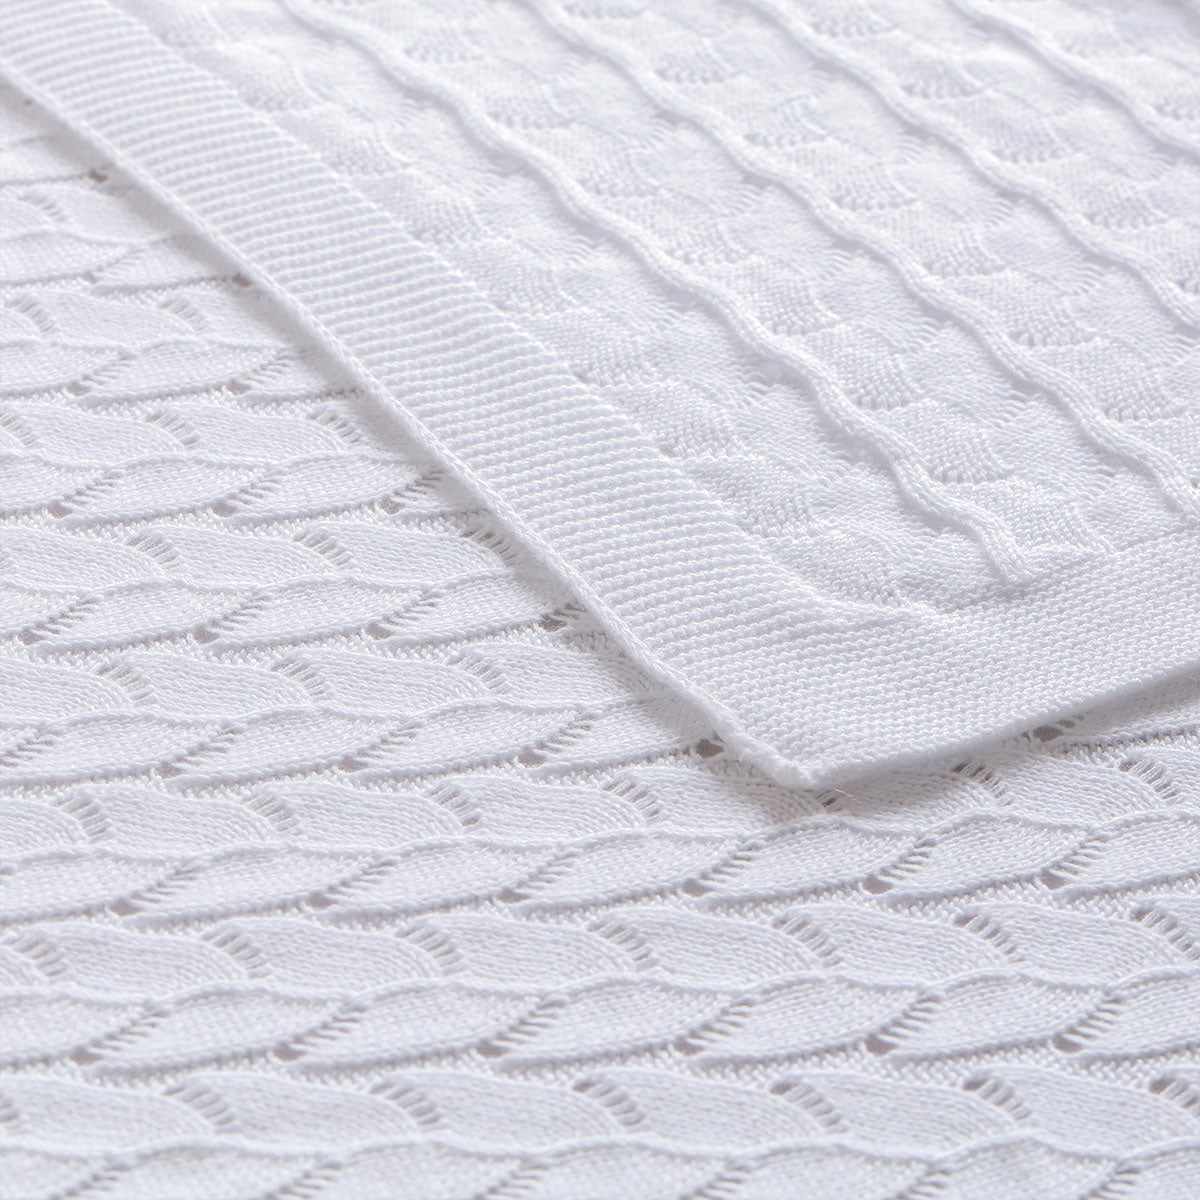 Lyla White Cotton Baby Blanket 75 x 100 cm